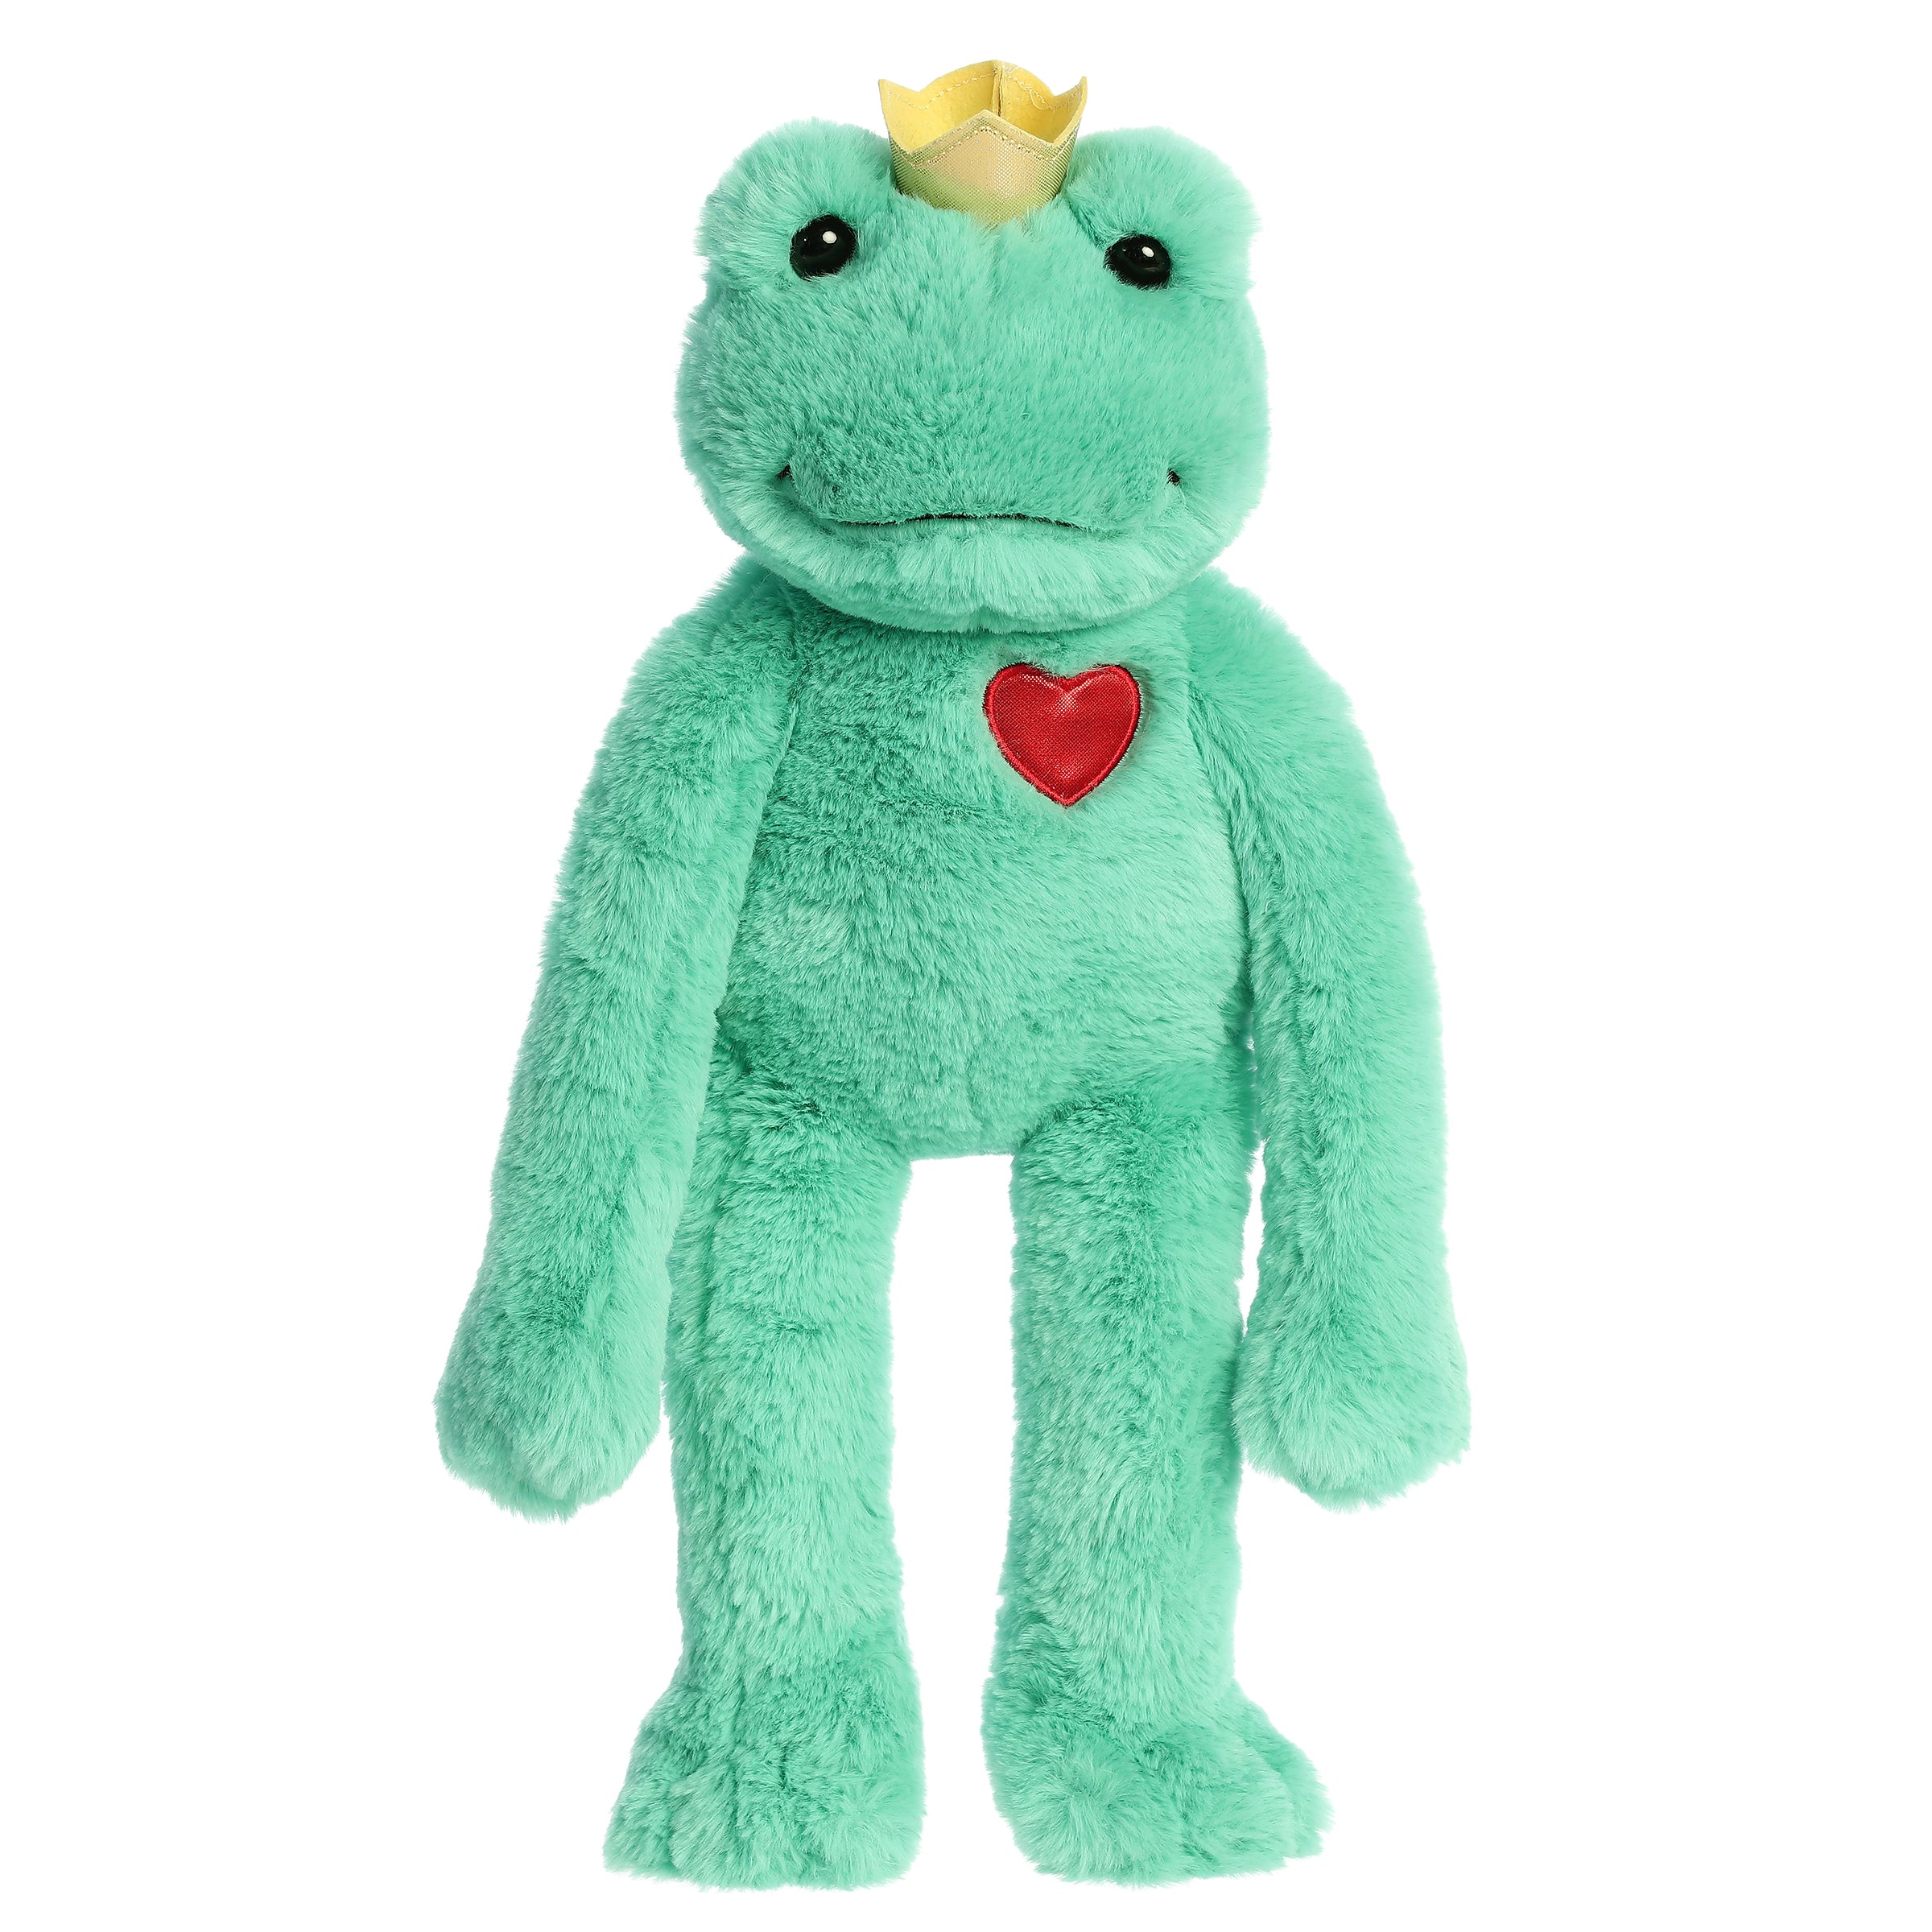 Big Eyed Frog Plush – My Heart Teddy